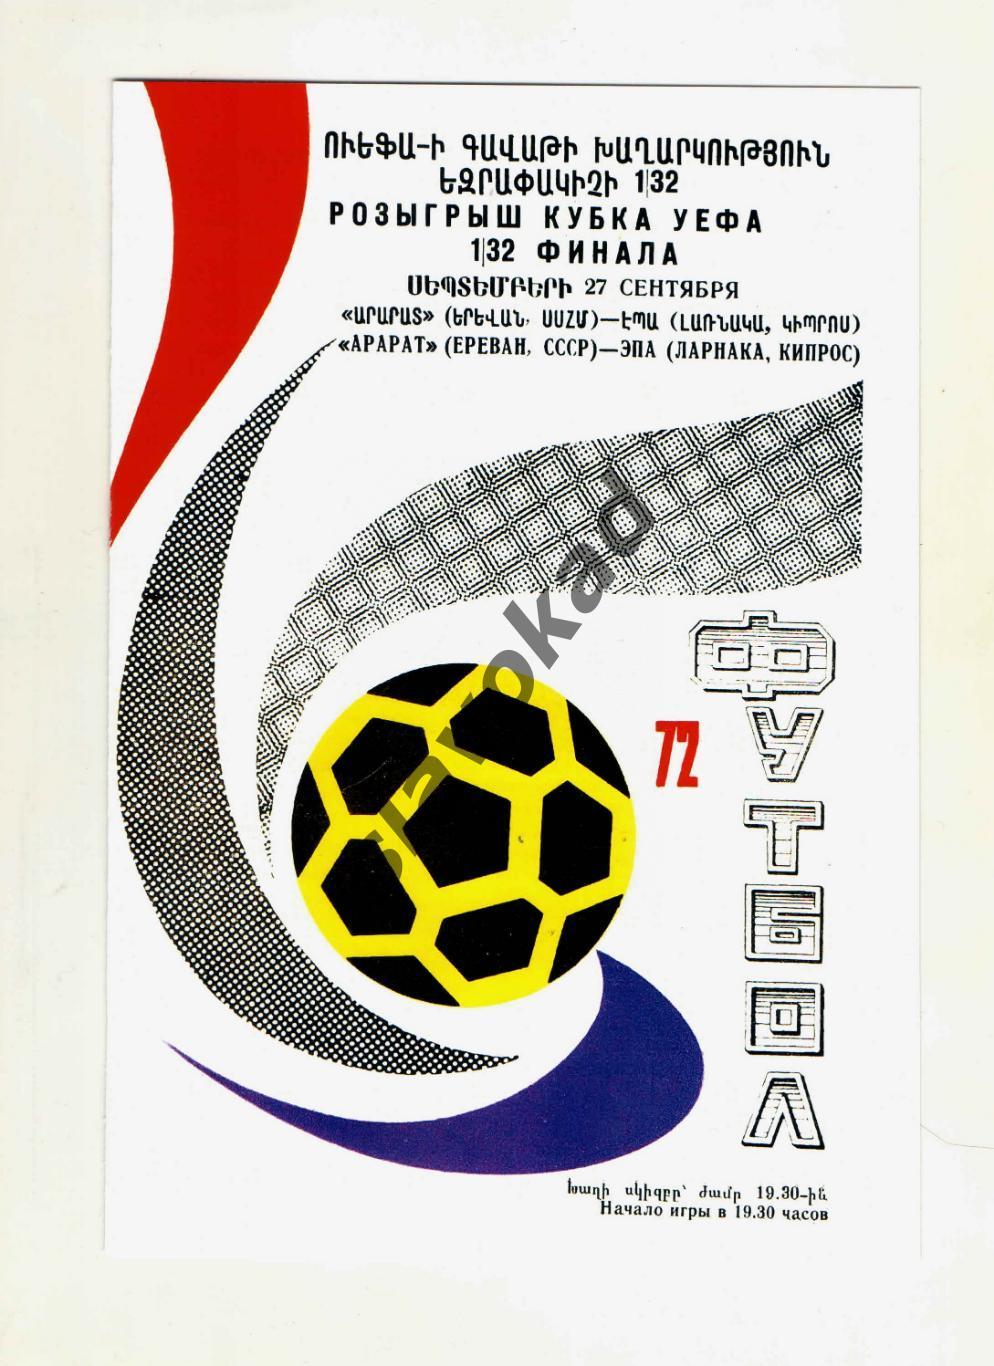 Арарат Ереван - ЭПА Ларнака Кипр 1972 - Кубок УЕФА - КОПИЯ